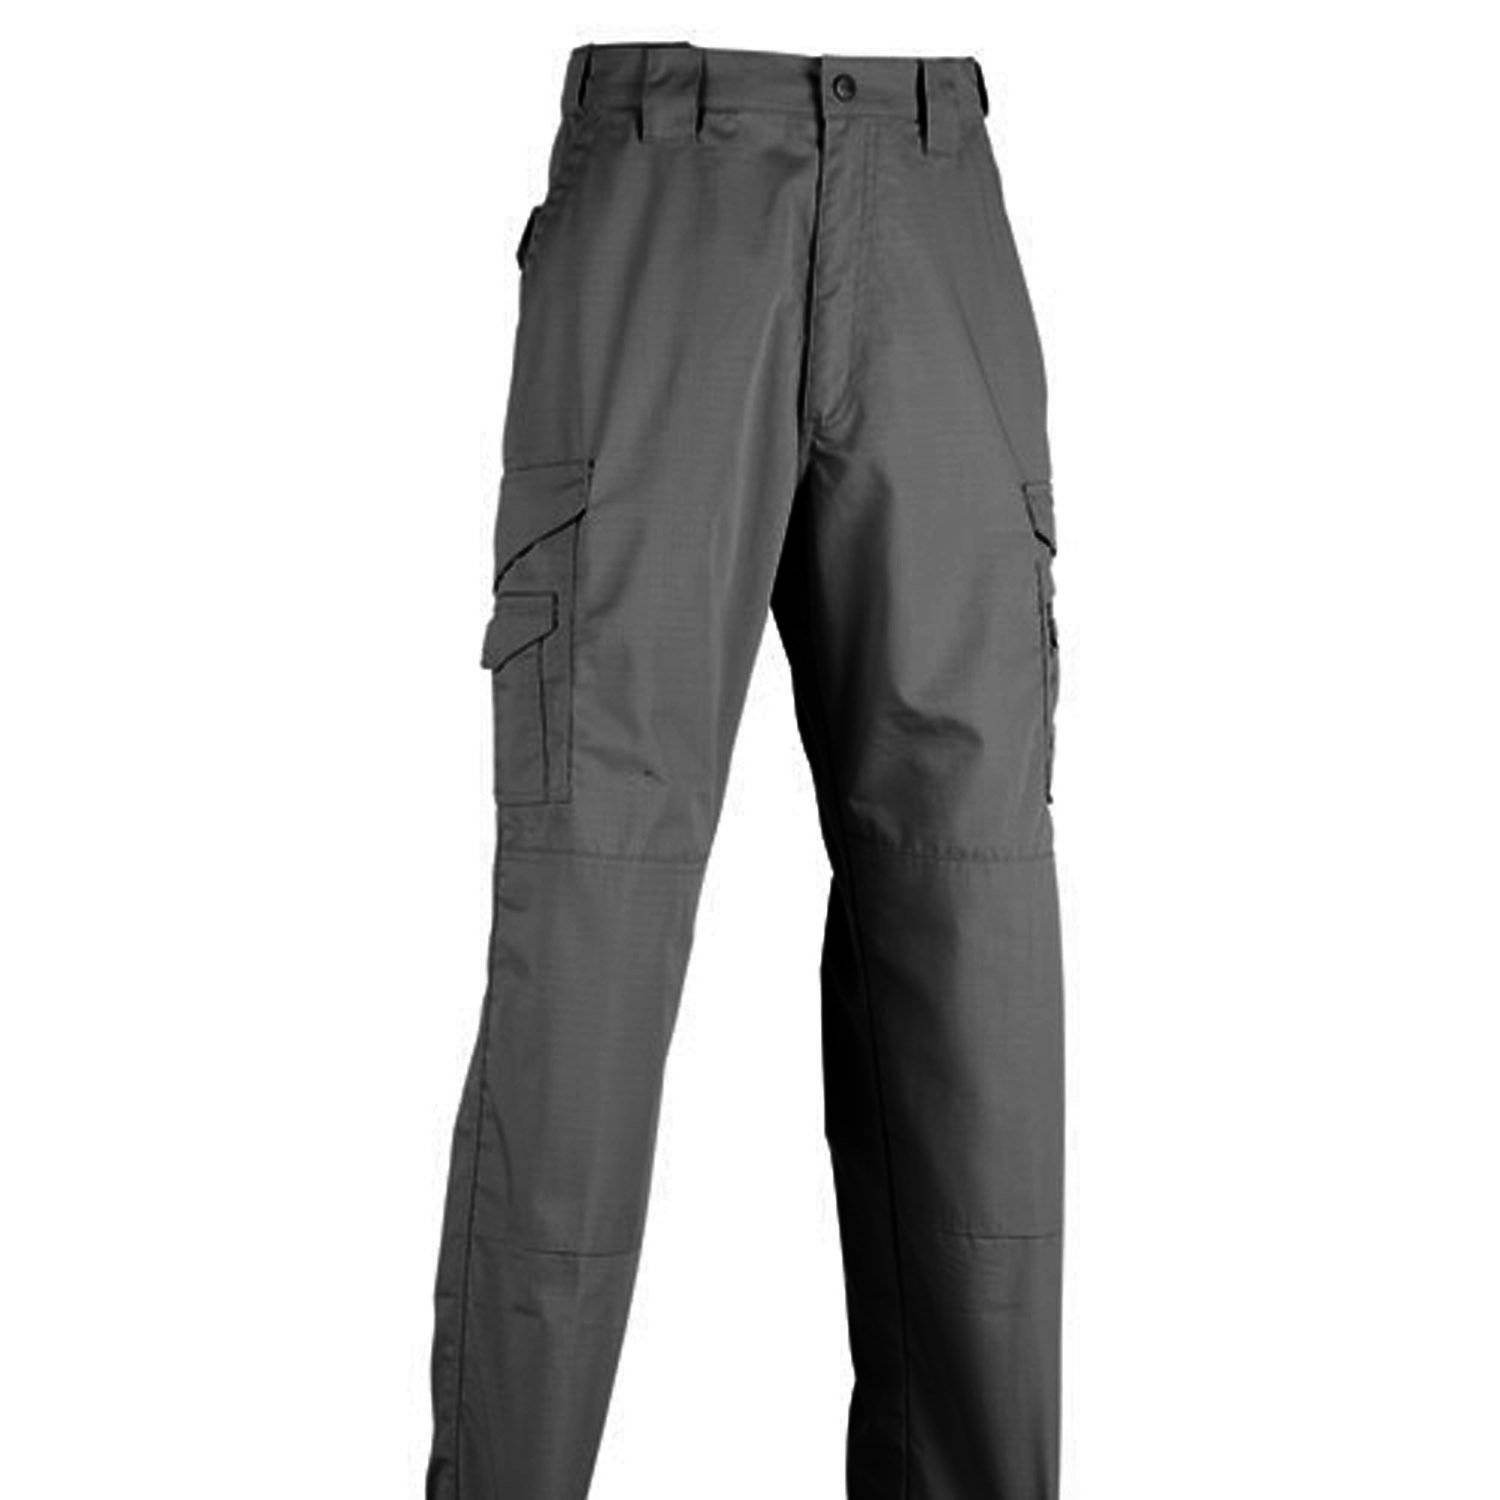 TRU-SPEC 24-7 Series Original Tactical Pants